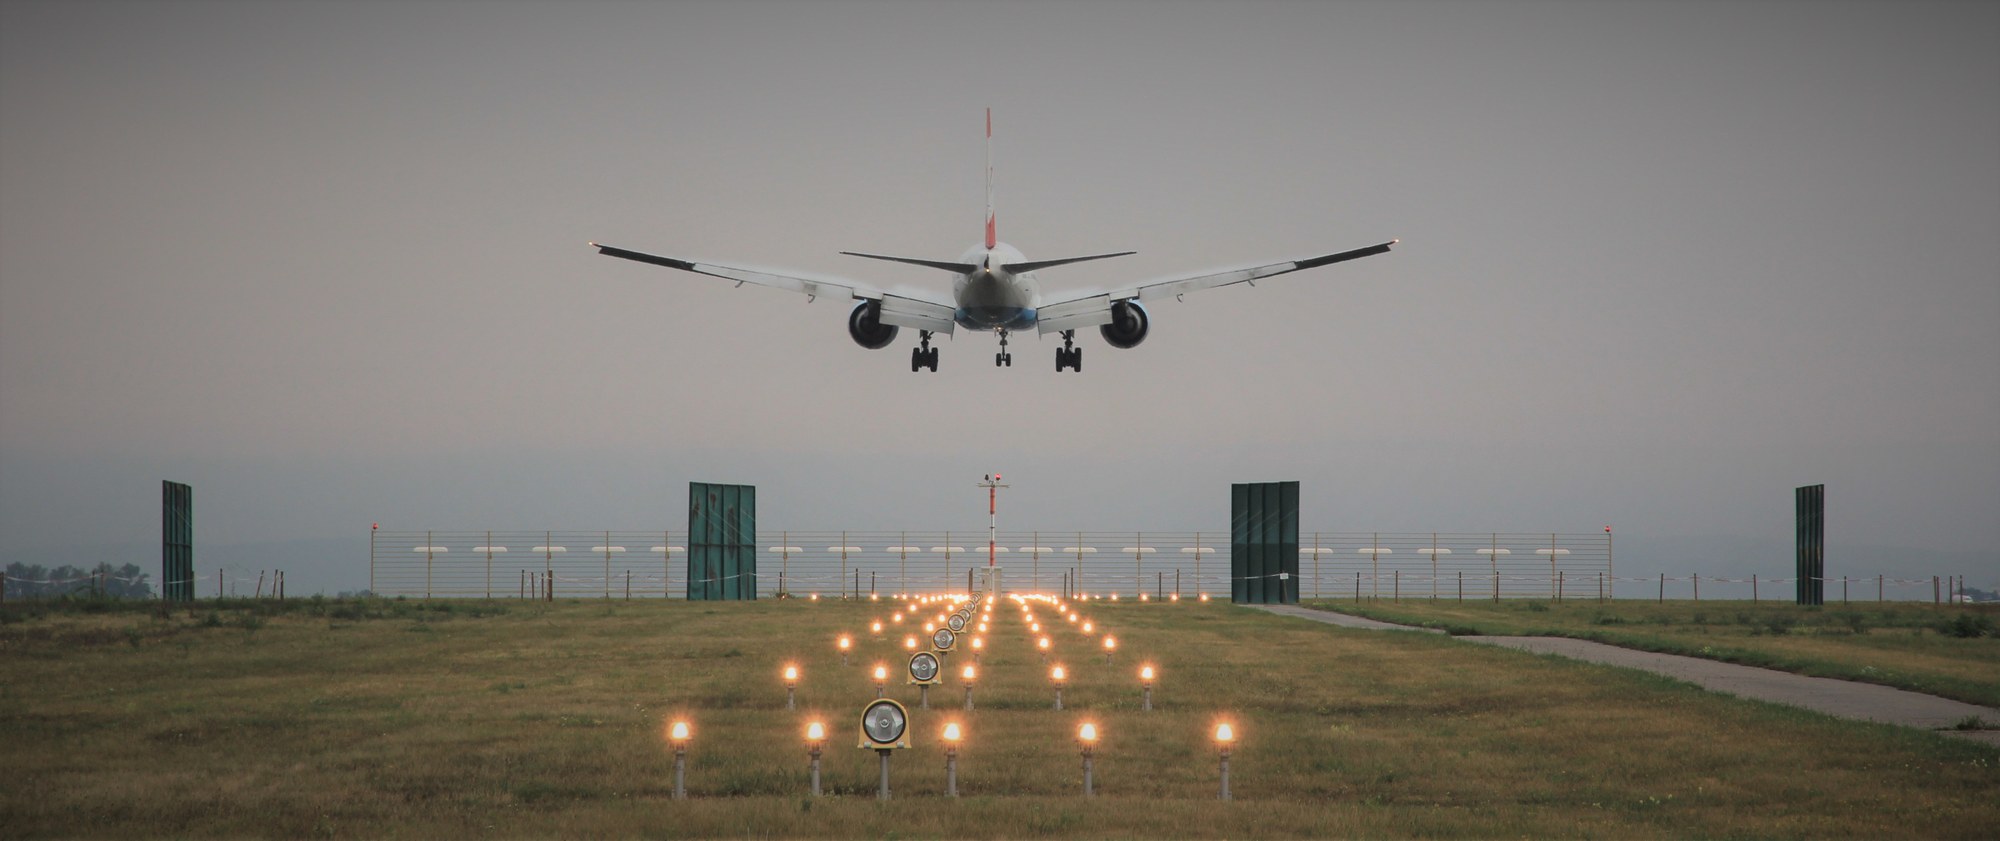 Anflug eines Flugzeugs auf der Landebahn am Flughafen Wien